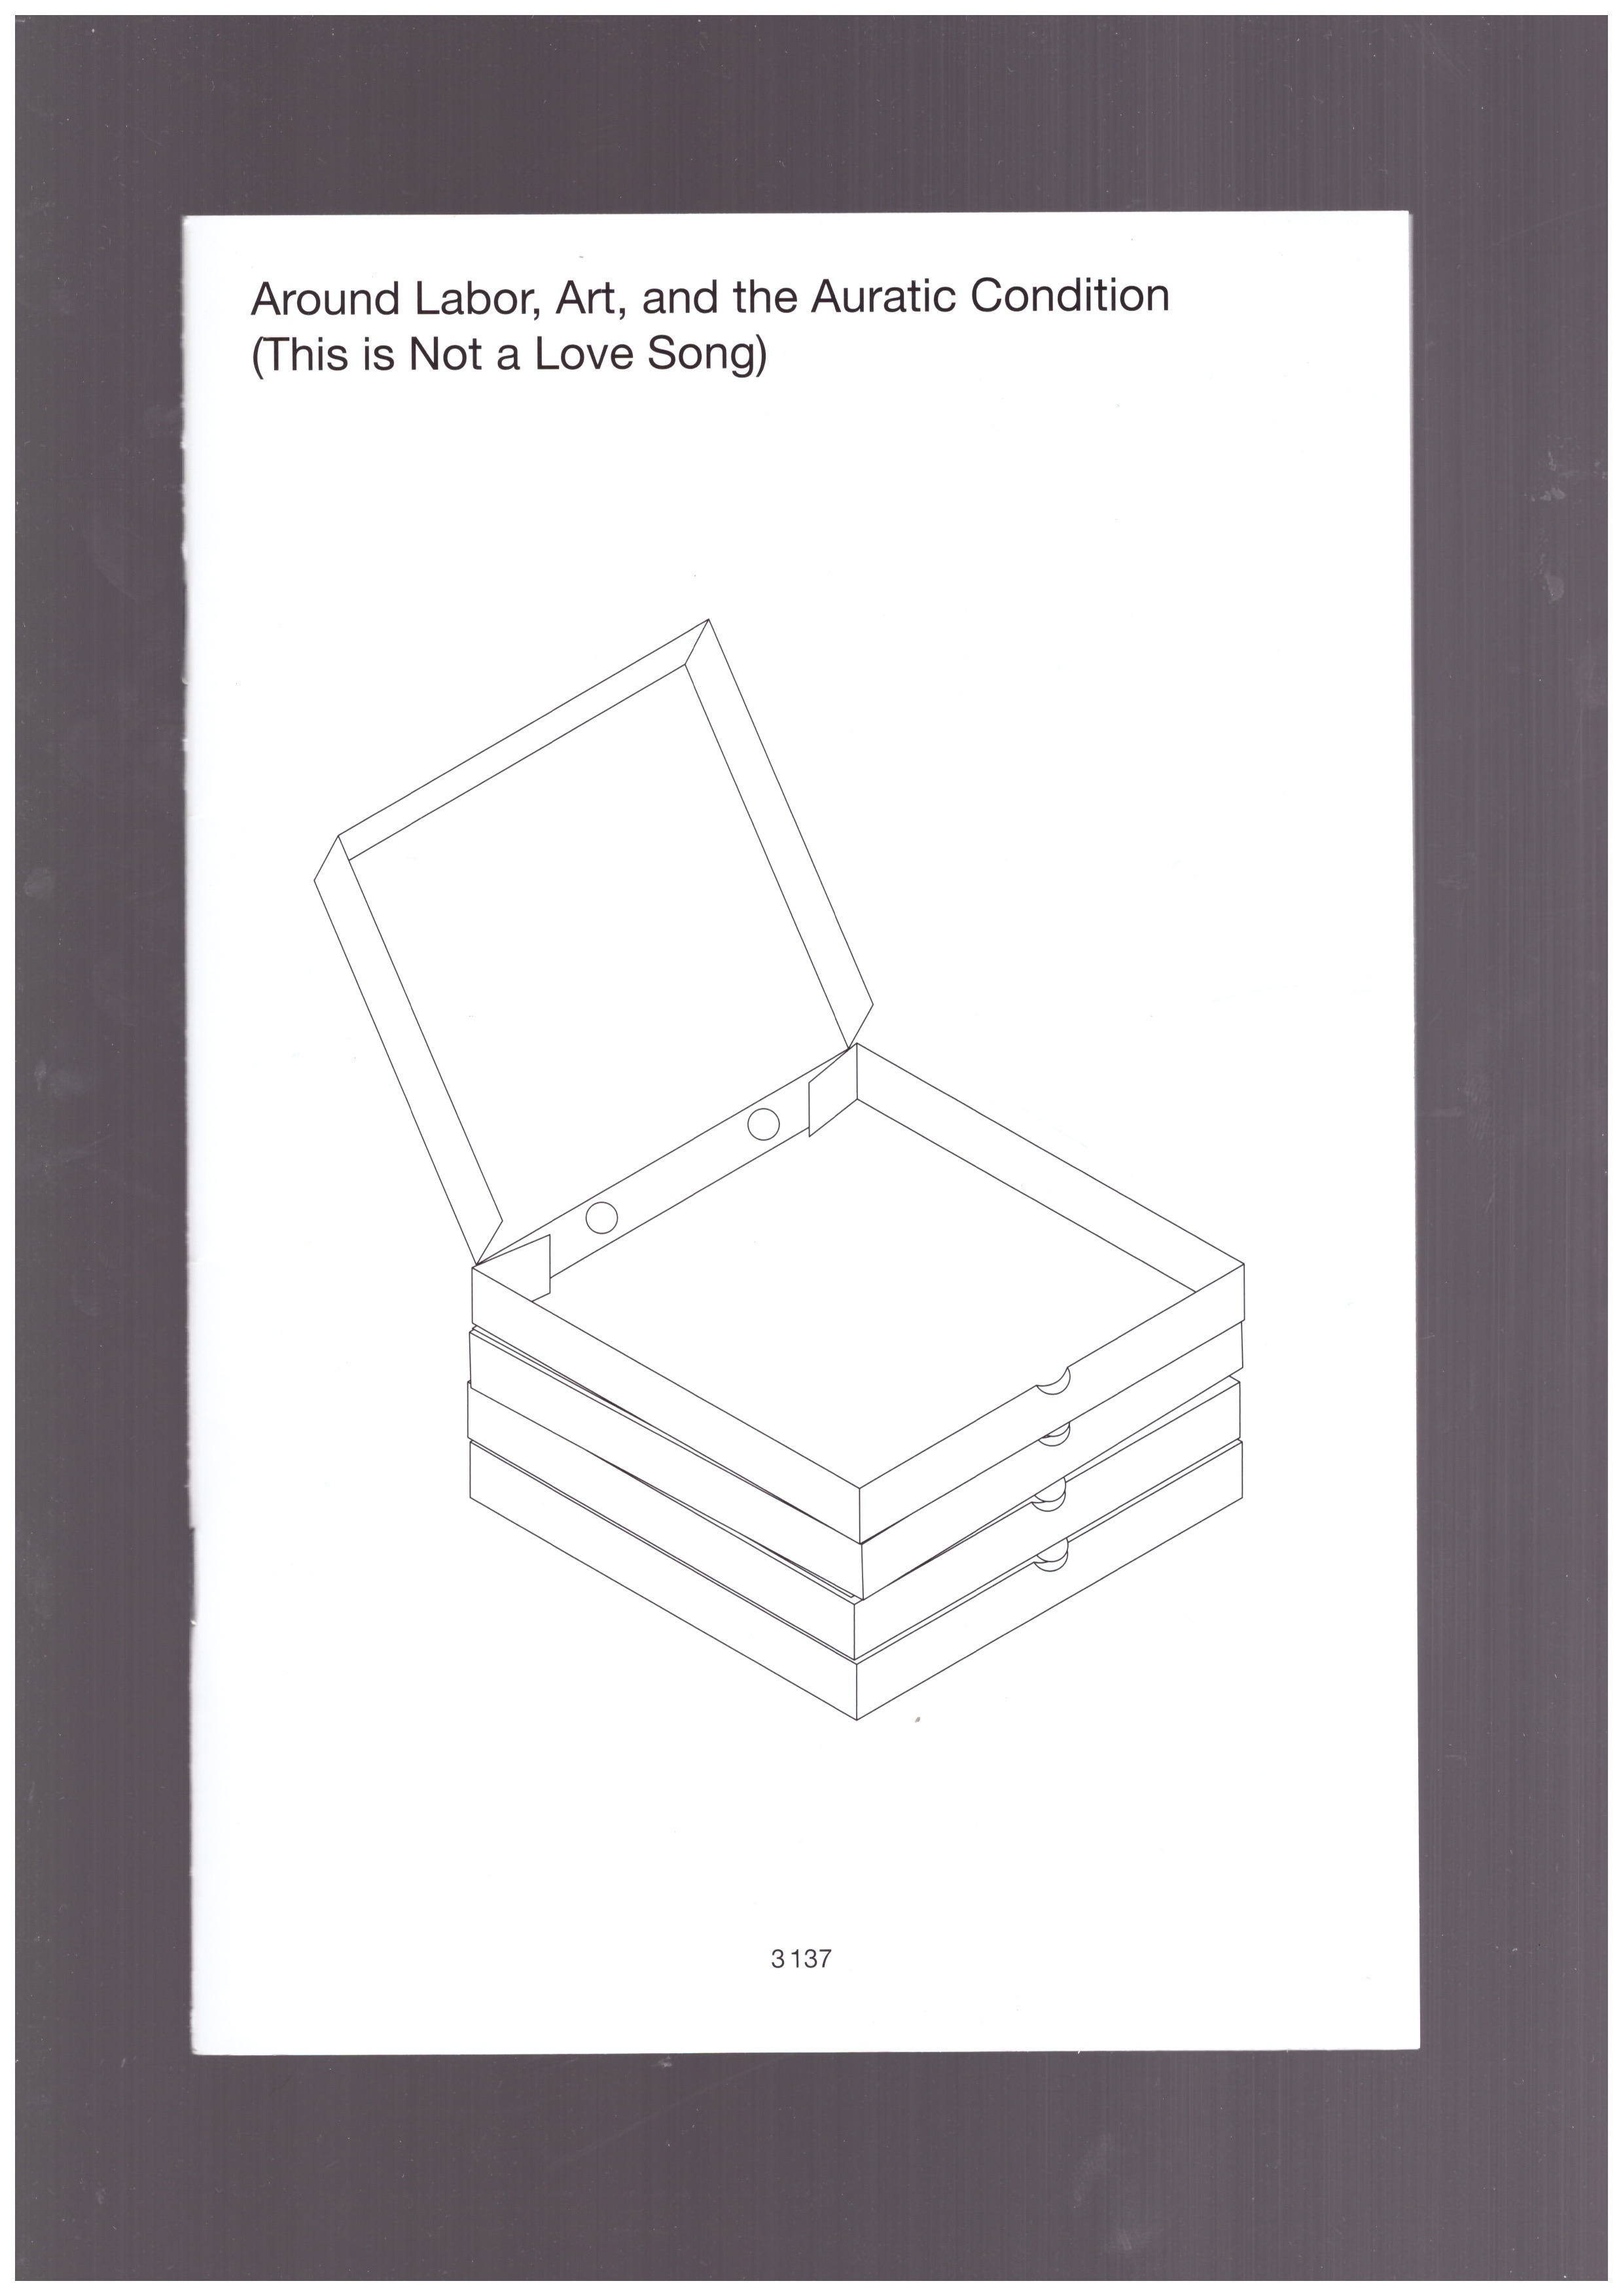  CONTI, Ilaria Conti; KOUMIANAKI, Chrysanthi; NIKOLAOU, Kosmas; VLASSOPOULOU, Paky (eds.) - Around Labor, Art, and the Auratic Condition (This is Not a Love Song)